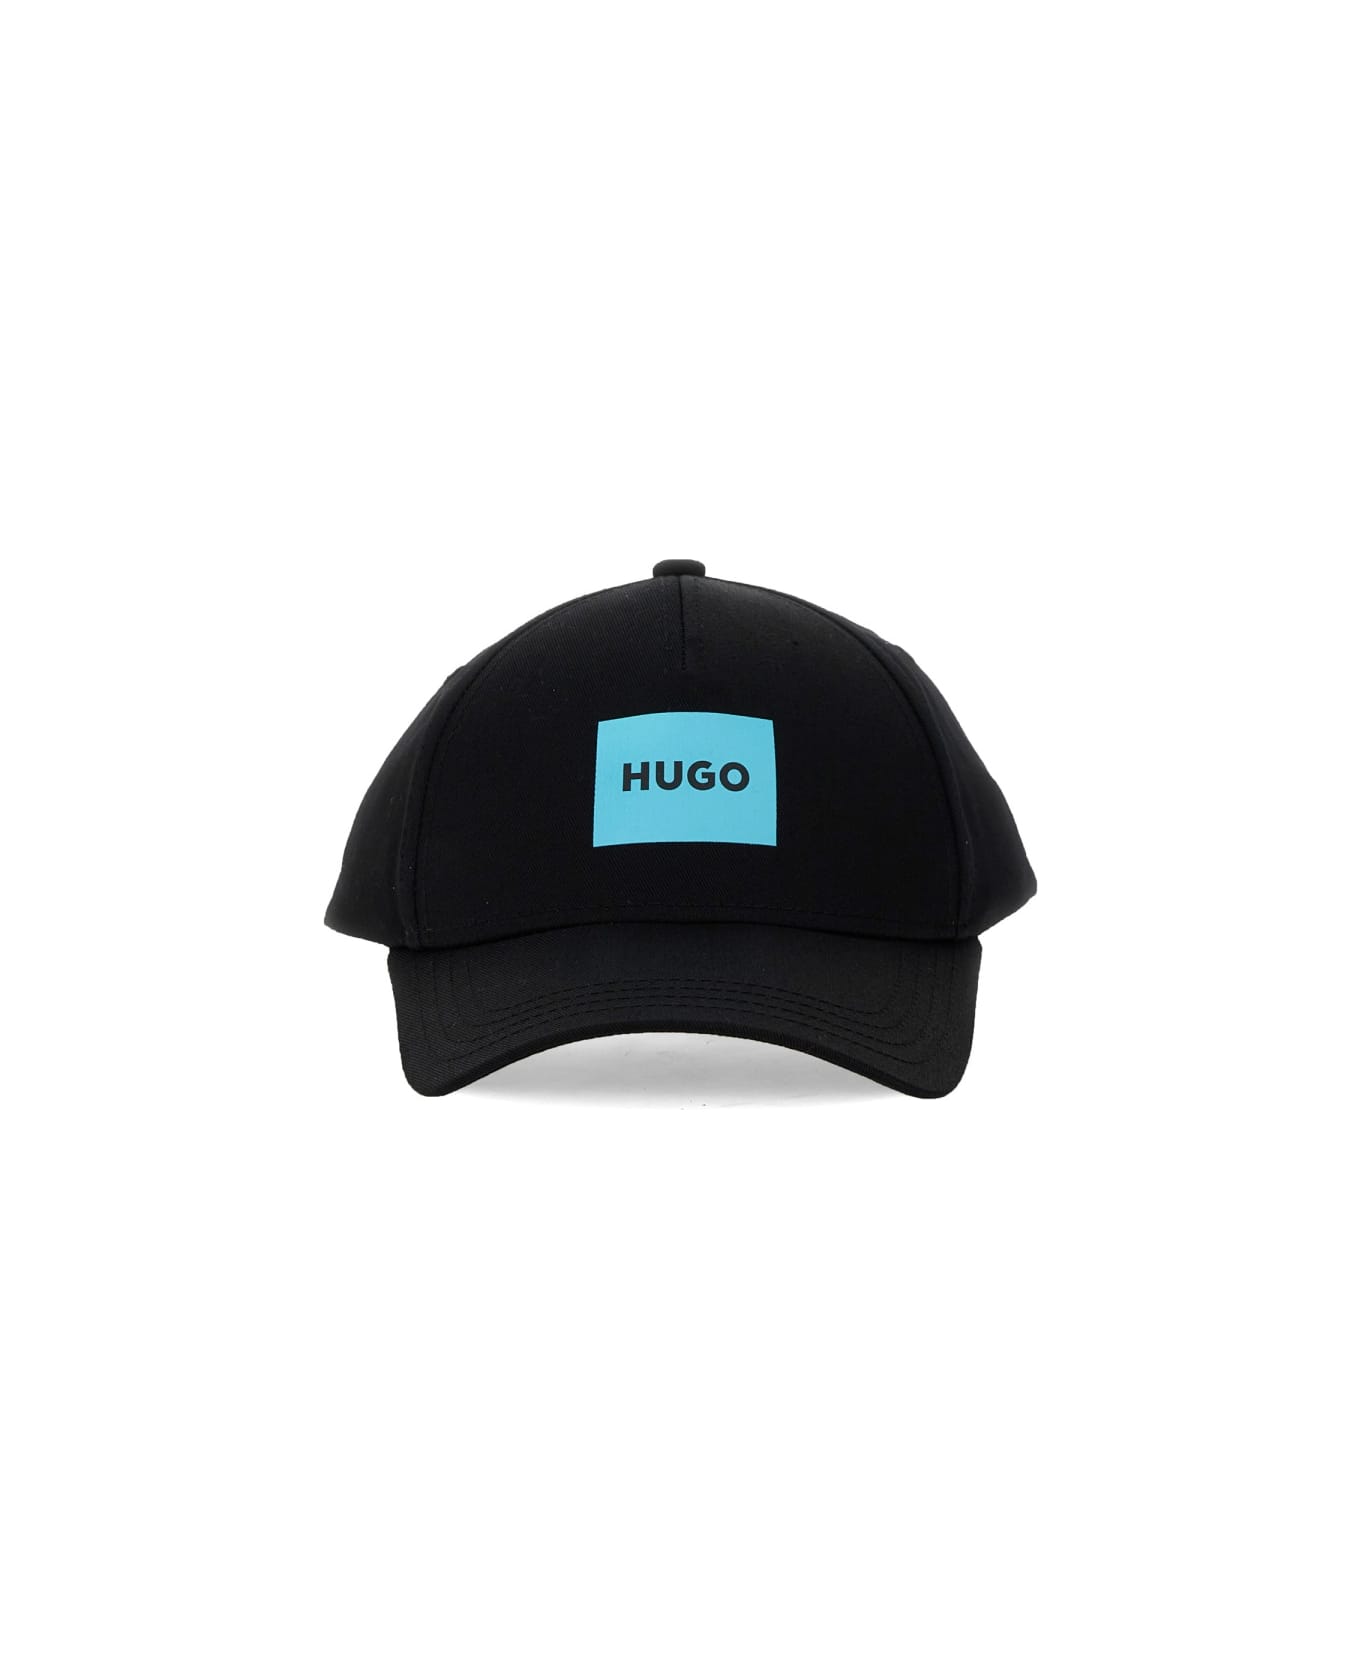 Hugo Boss Baseball Cap "jude" - BLACK